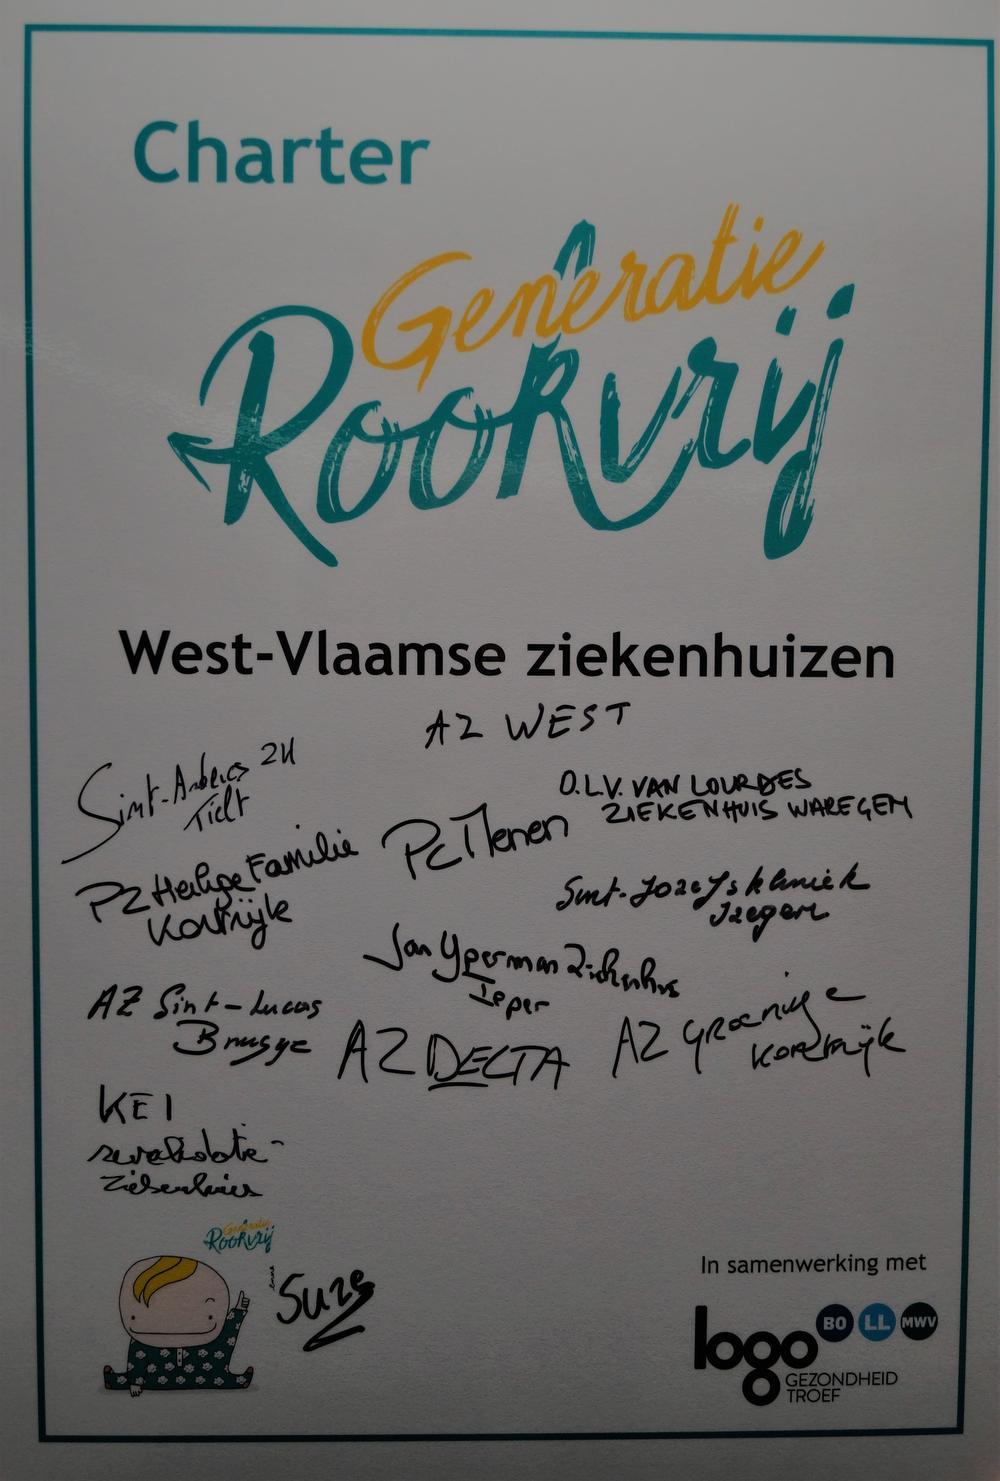 West-Vlaamse ziekenhuizen ondertekenen charter van Generatie Rookvrij